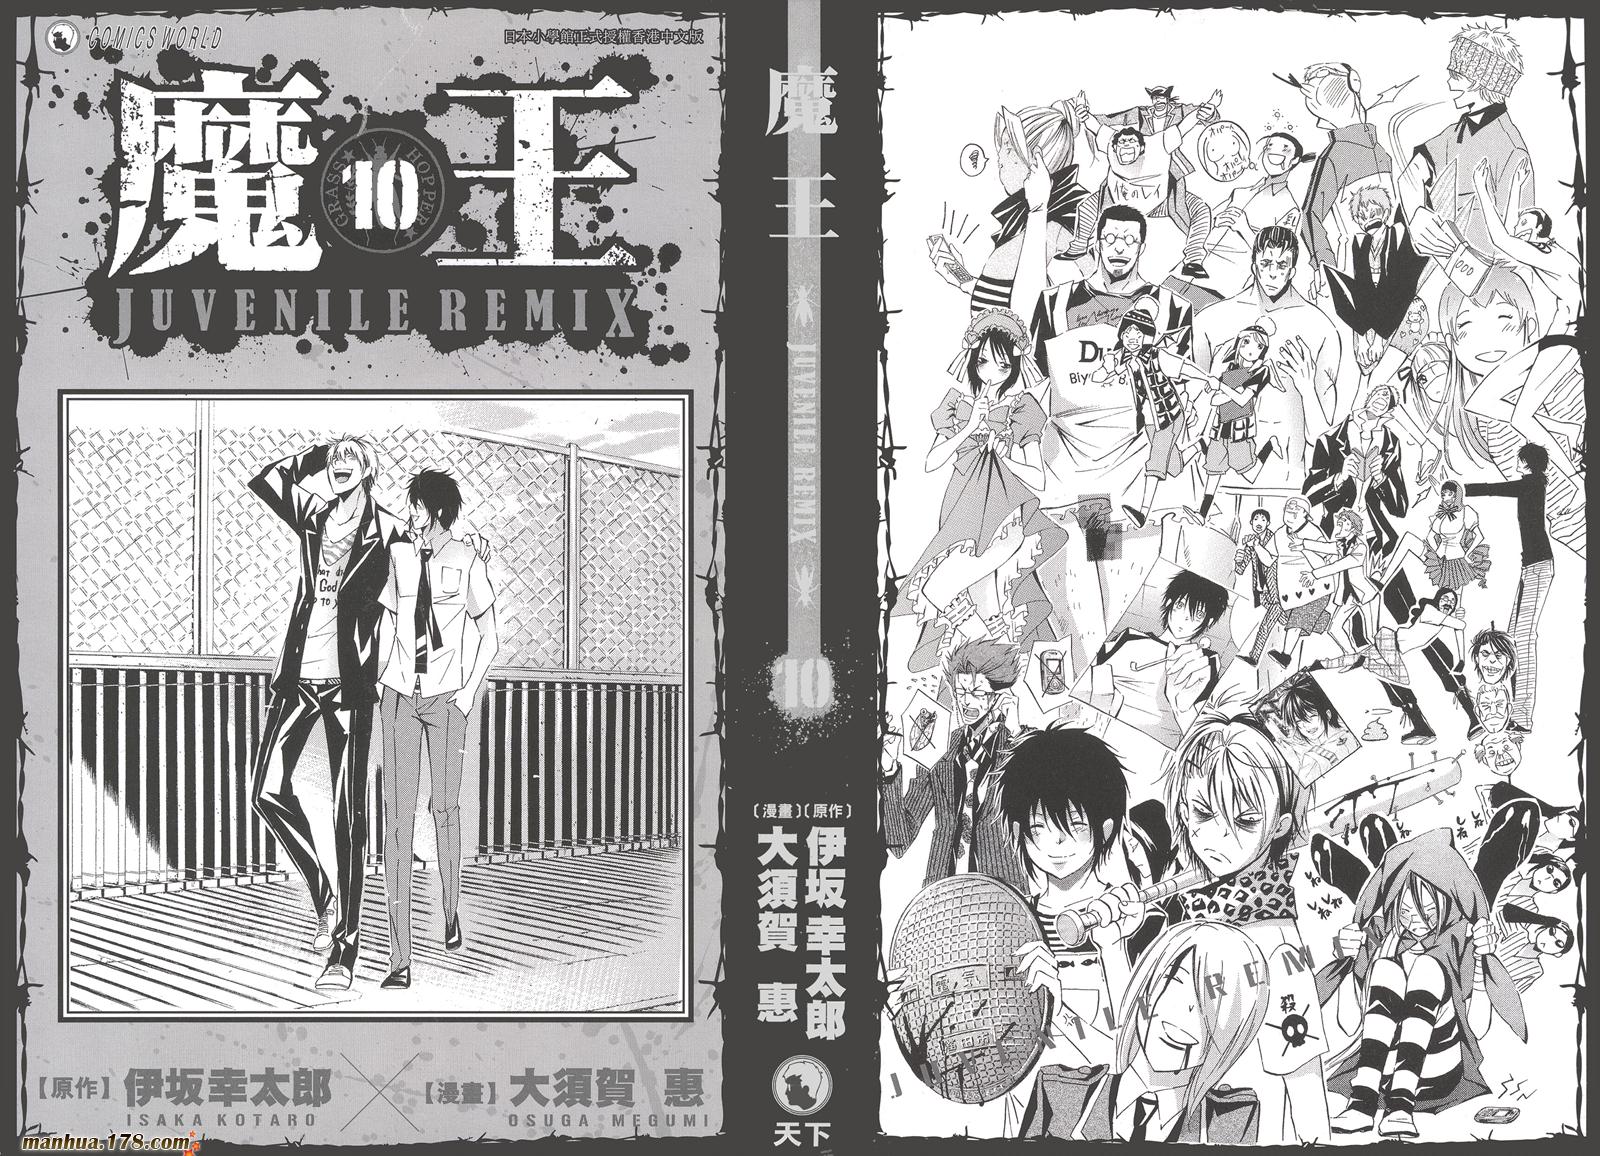 魔王juvenile Remix 第10卷完 漫畫線上看 動漫戲說 Acgn Cc